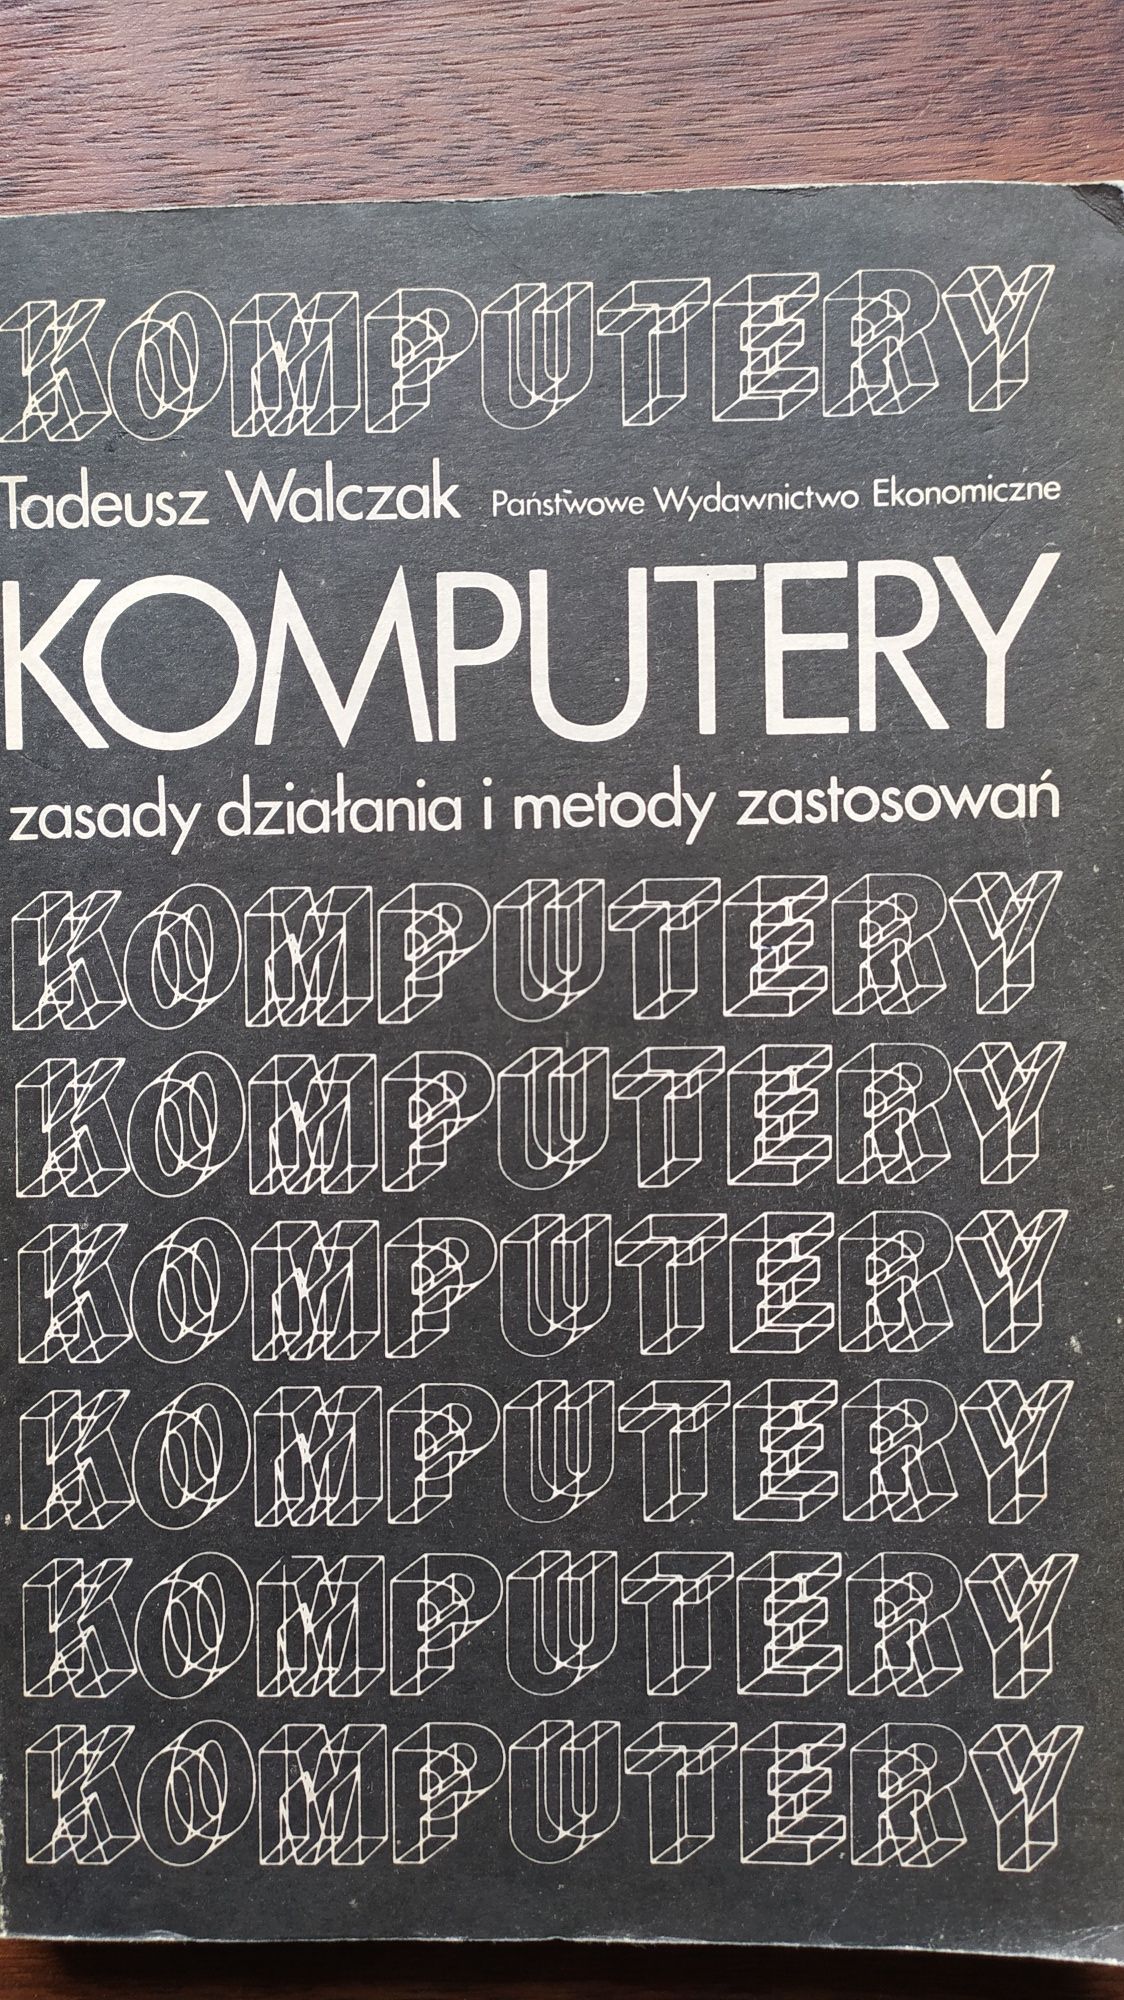 Komputery - Tadeusz Walczak